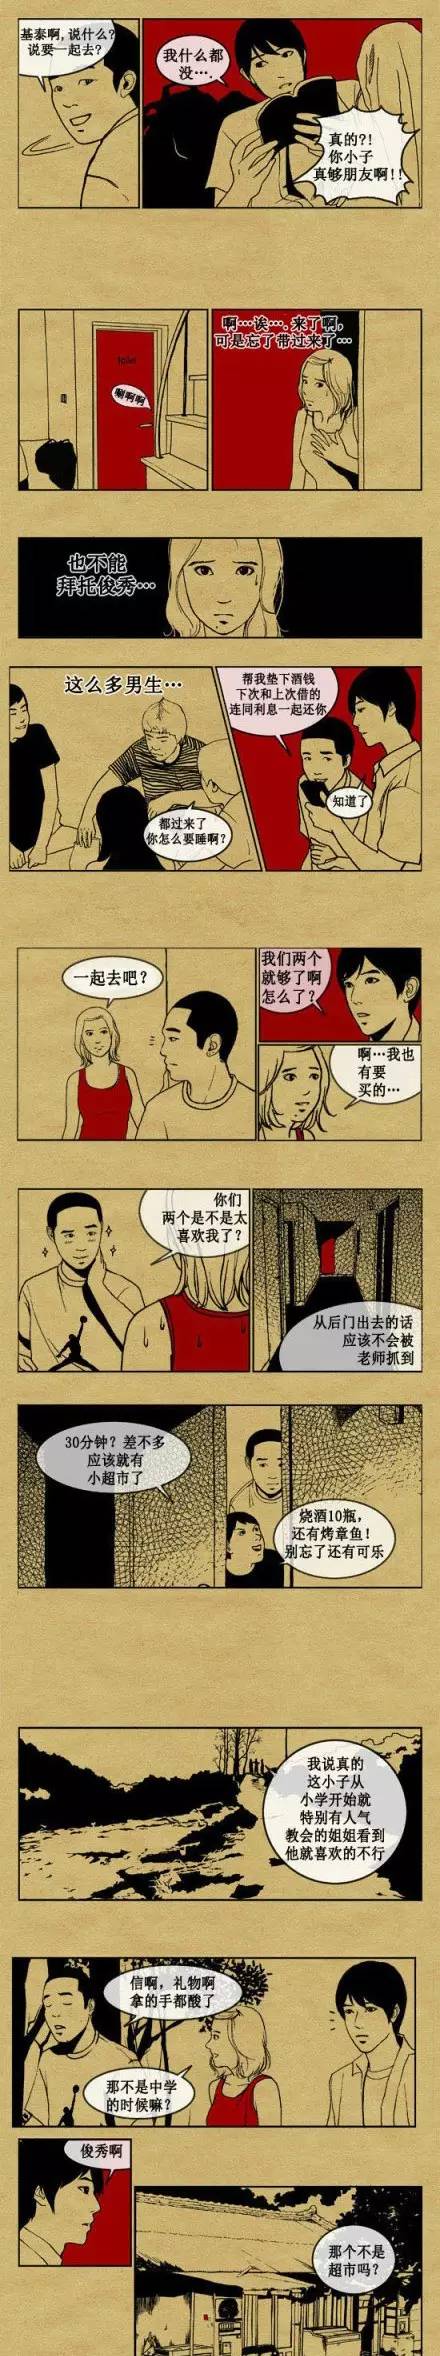 韩国人性漫画之《游戏的规则》